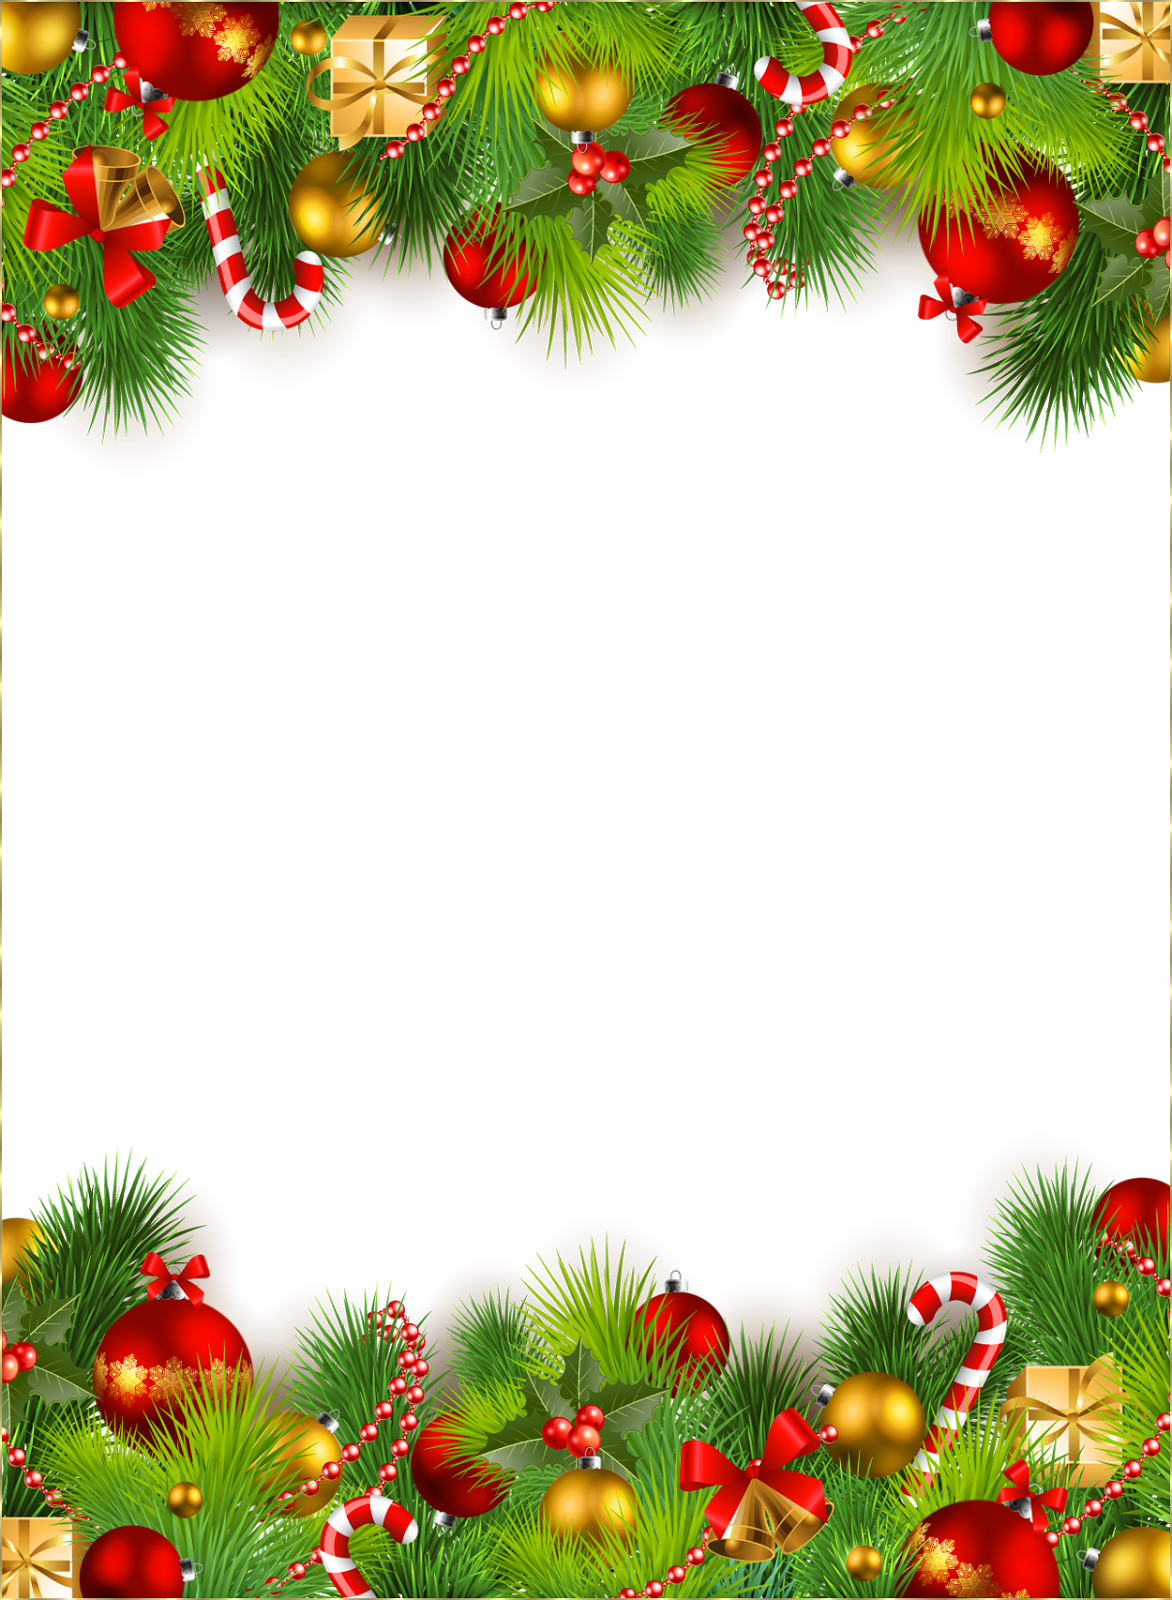 descarga gratuita de fondos de pantalla de edición de nombres,decoración navideña,árbol de navidad,decoración navideña,abeto,árbol